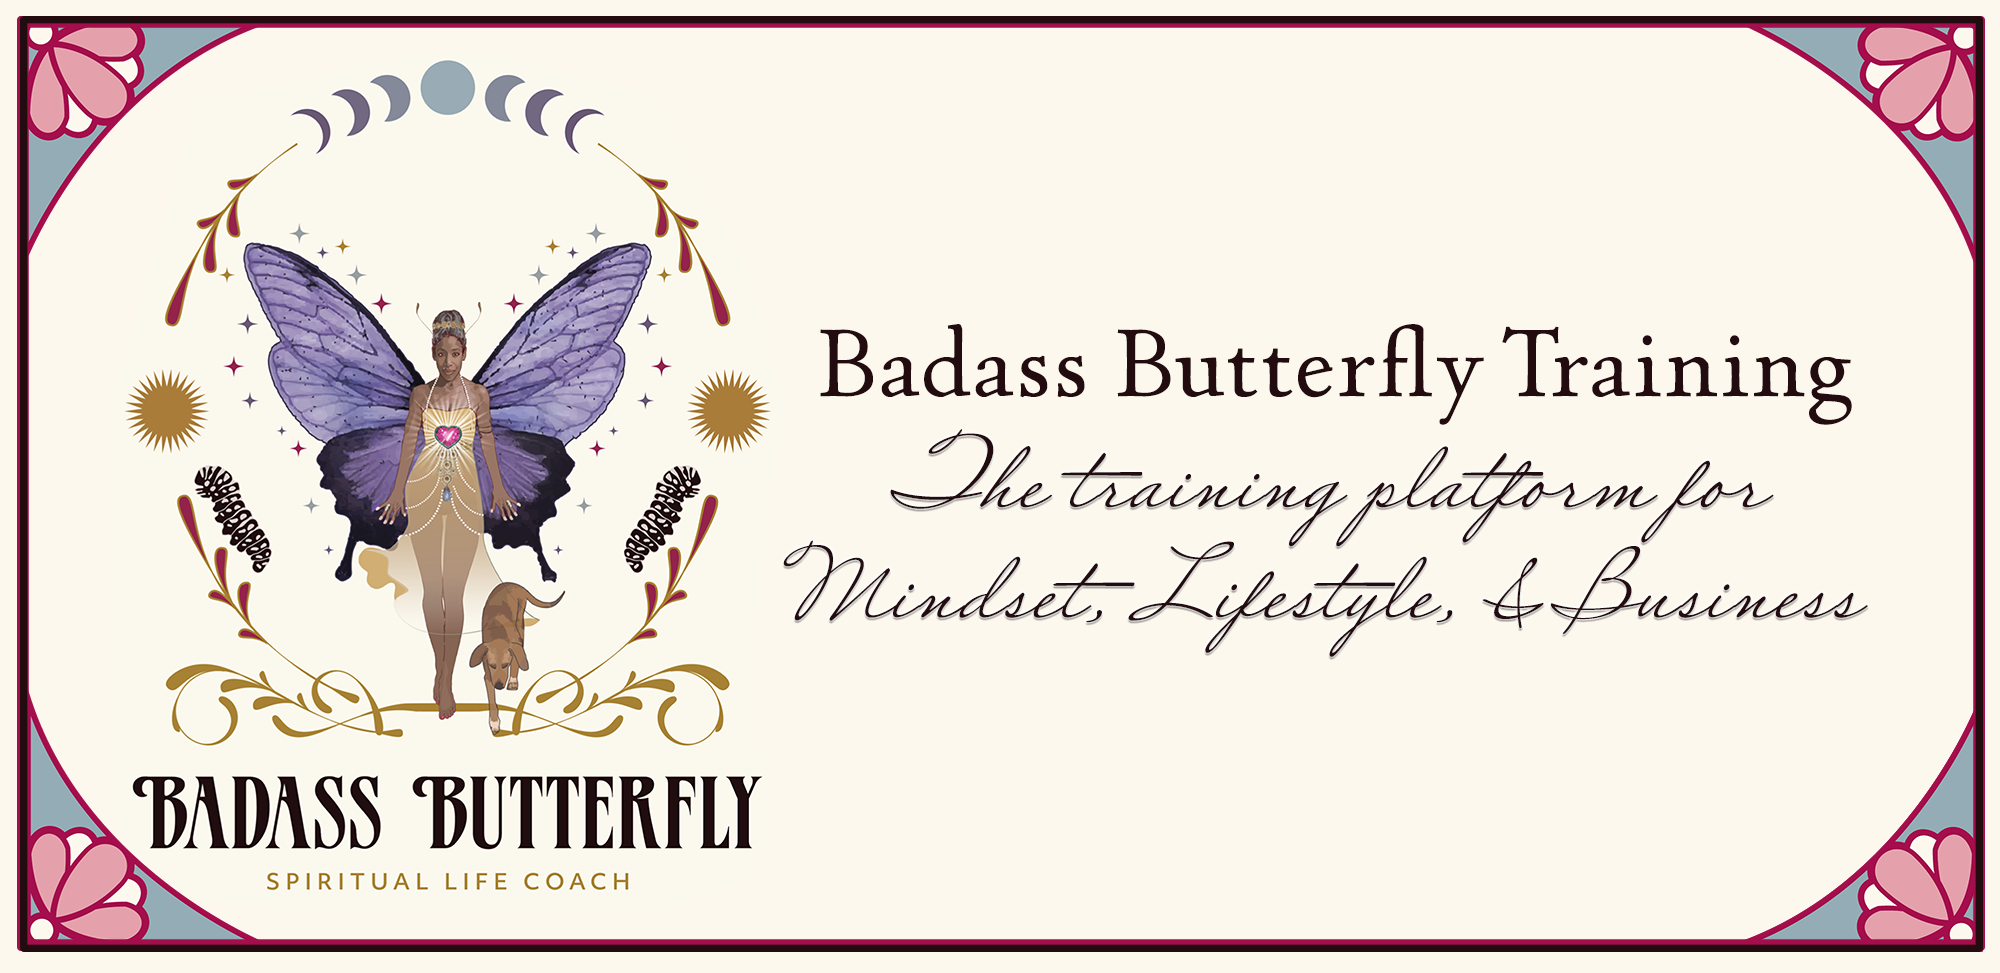 Badass Butterfly Training